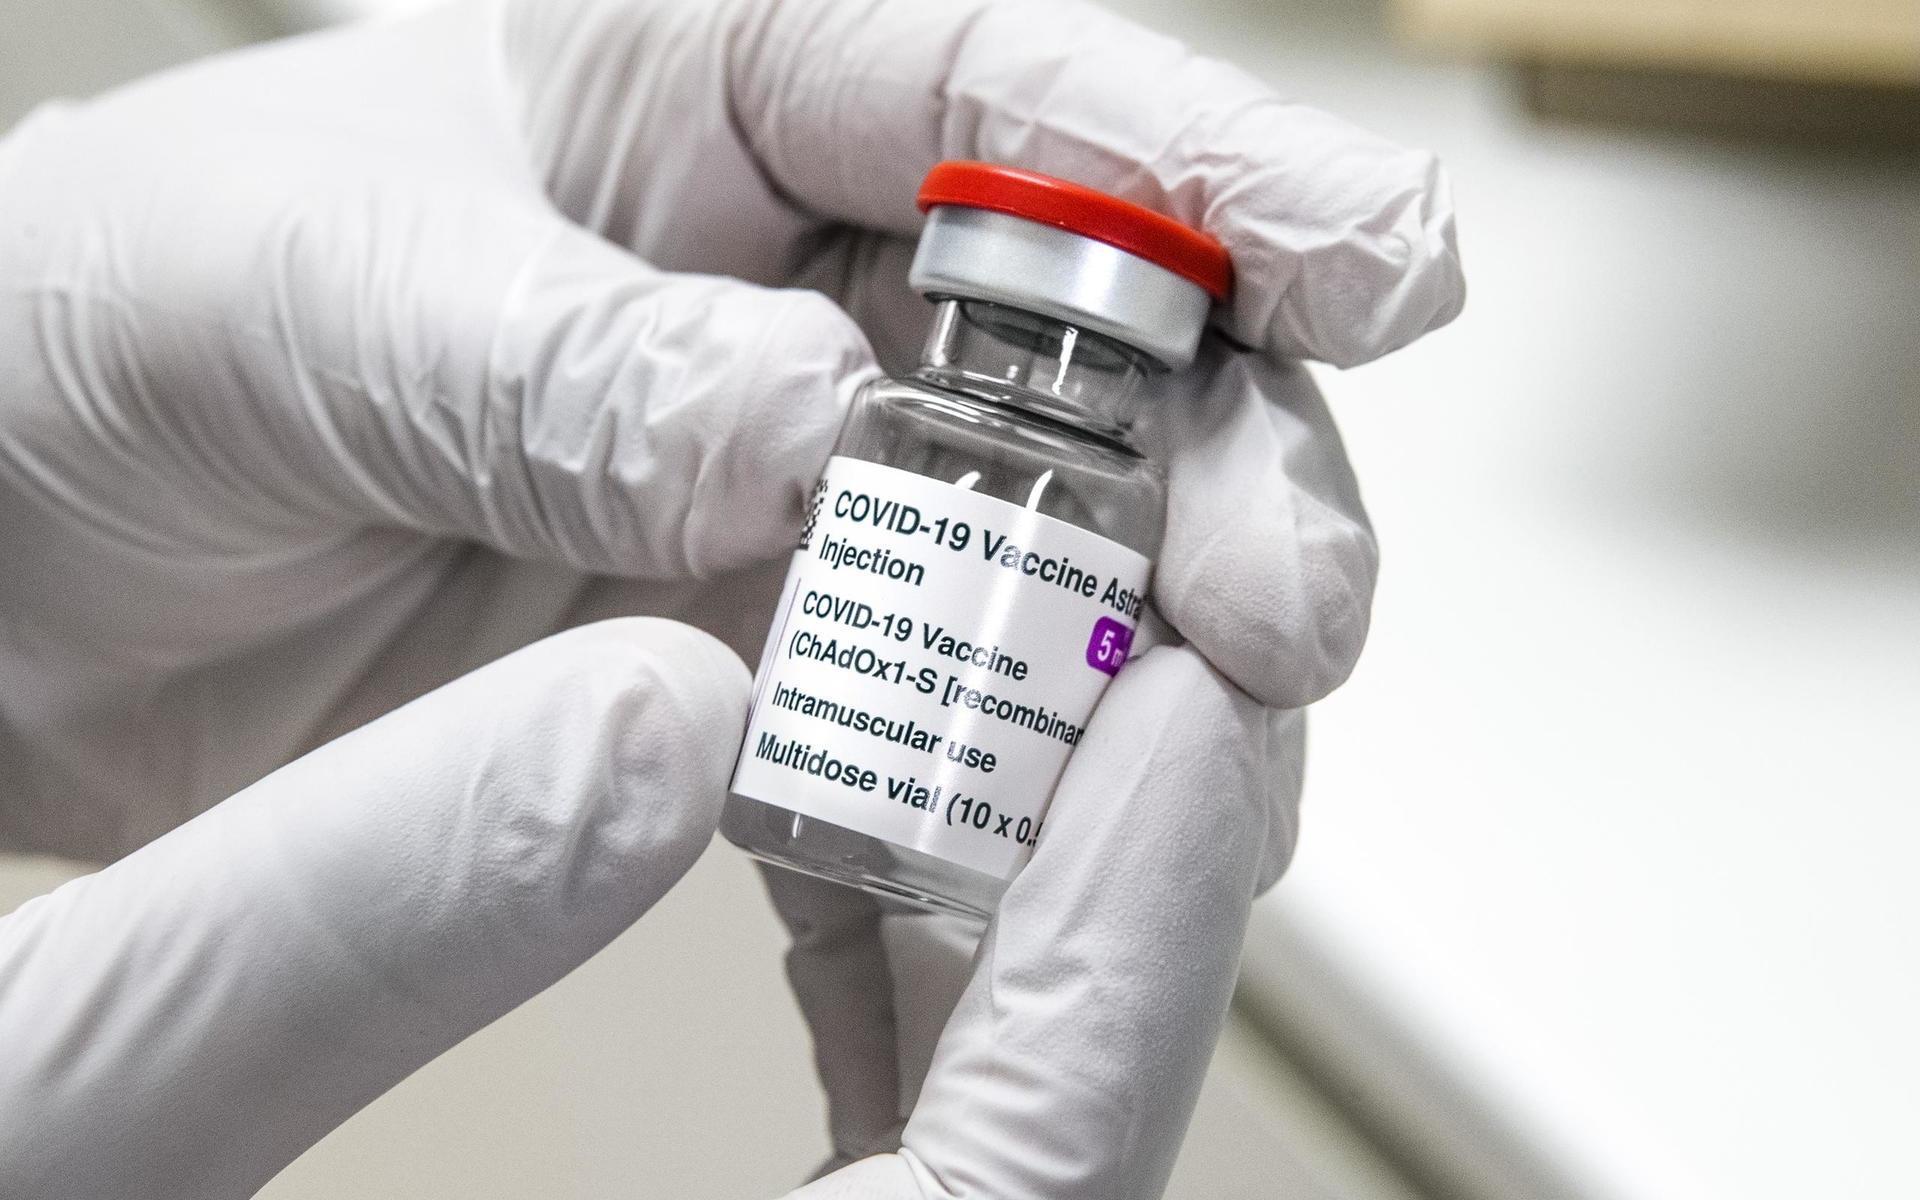 Sedan mitten av mars har användningen av Astra Zeneca-vaccinet varit pausad för personer yngre än 65 år på grund av ett fåtal fallrapporter om biverkningar med blodproppar i kombination med blödning.